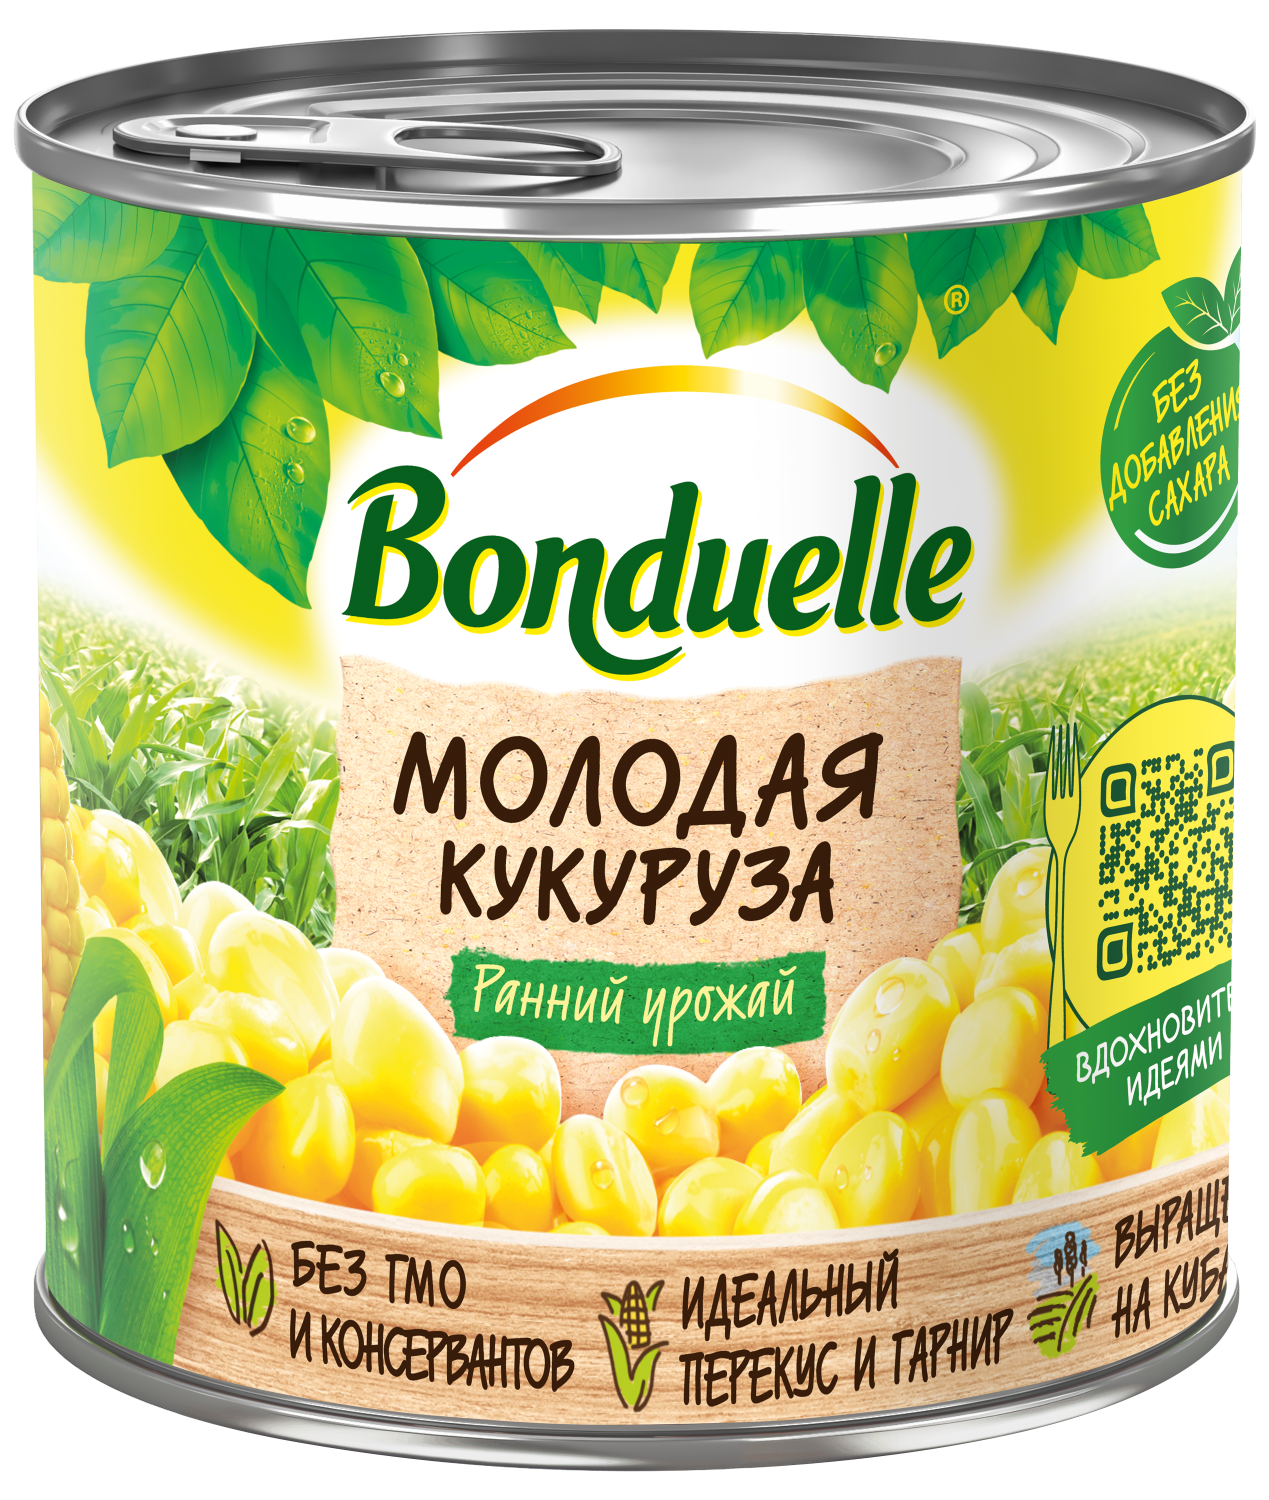 Овощные консервы Bonduelle - отзывы, рейтинг и оценки покупателей -маркетплейс megamarket.ru